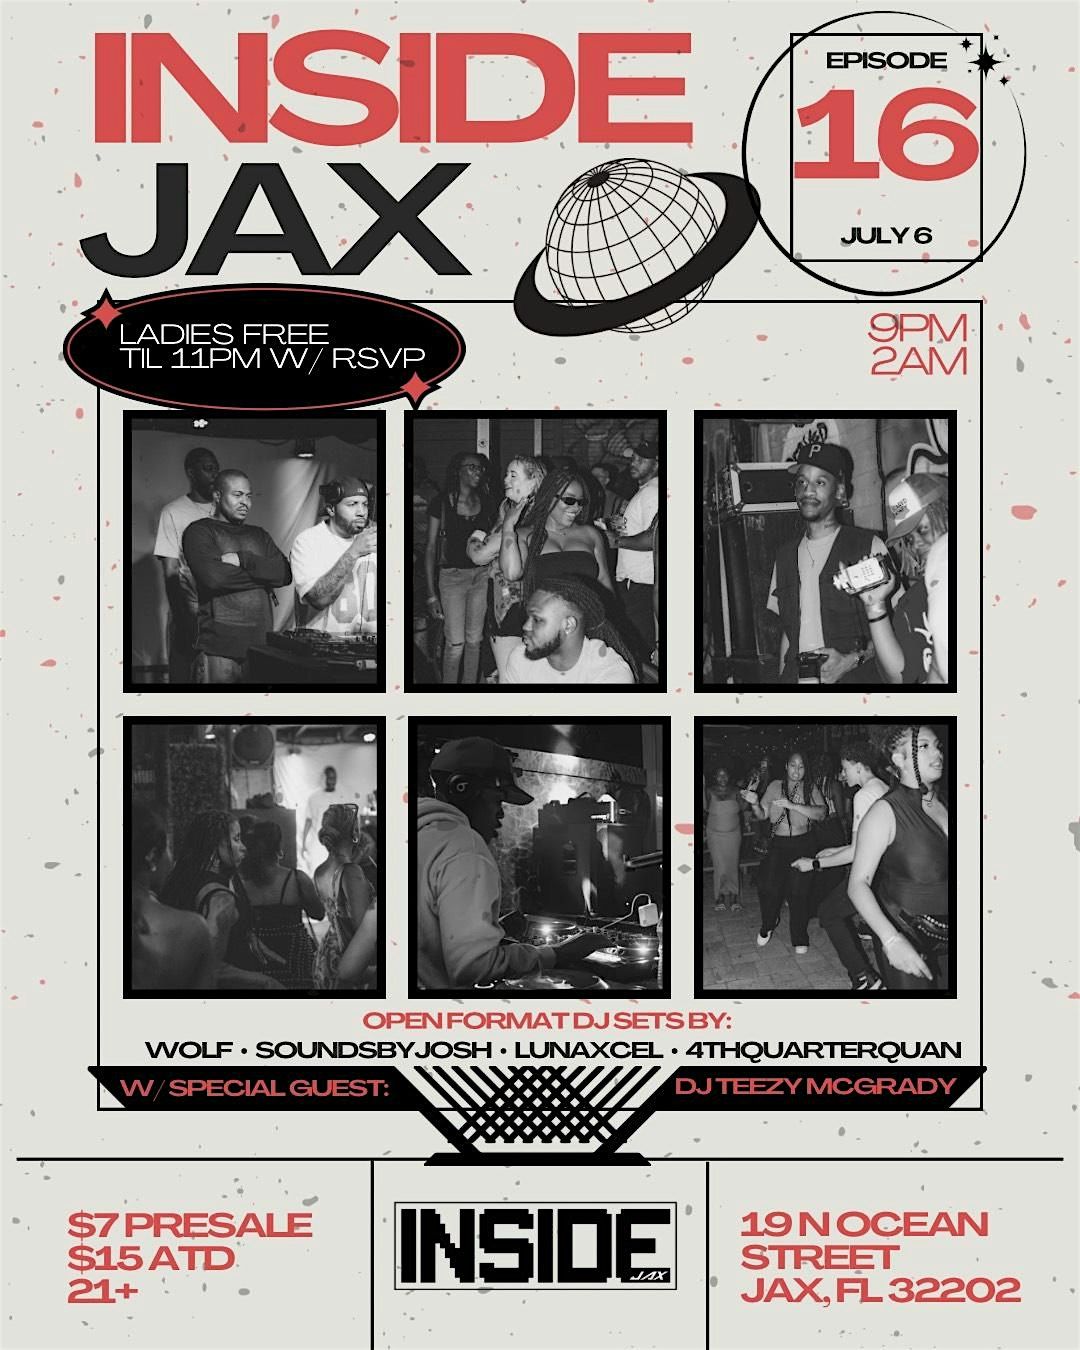 INSIDE JAX EP. 16 ft. DJ Teezy McGrady!